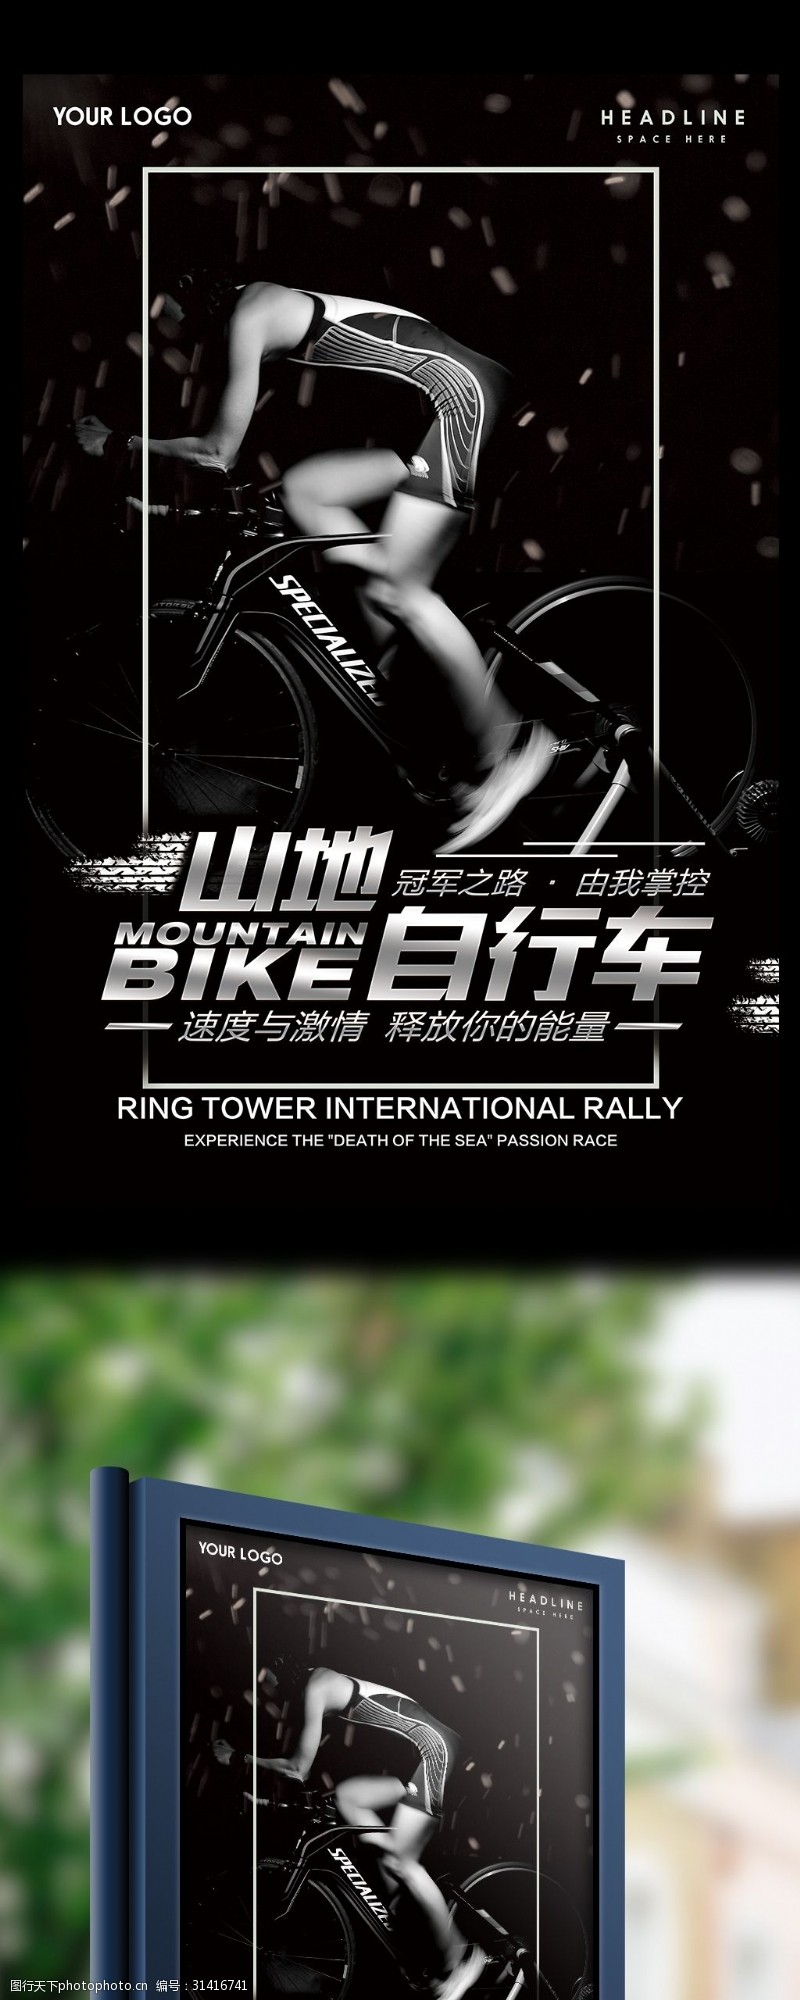 山地车体育运动山地自行车户外海报宣传单